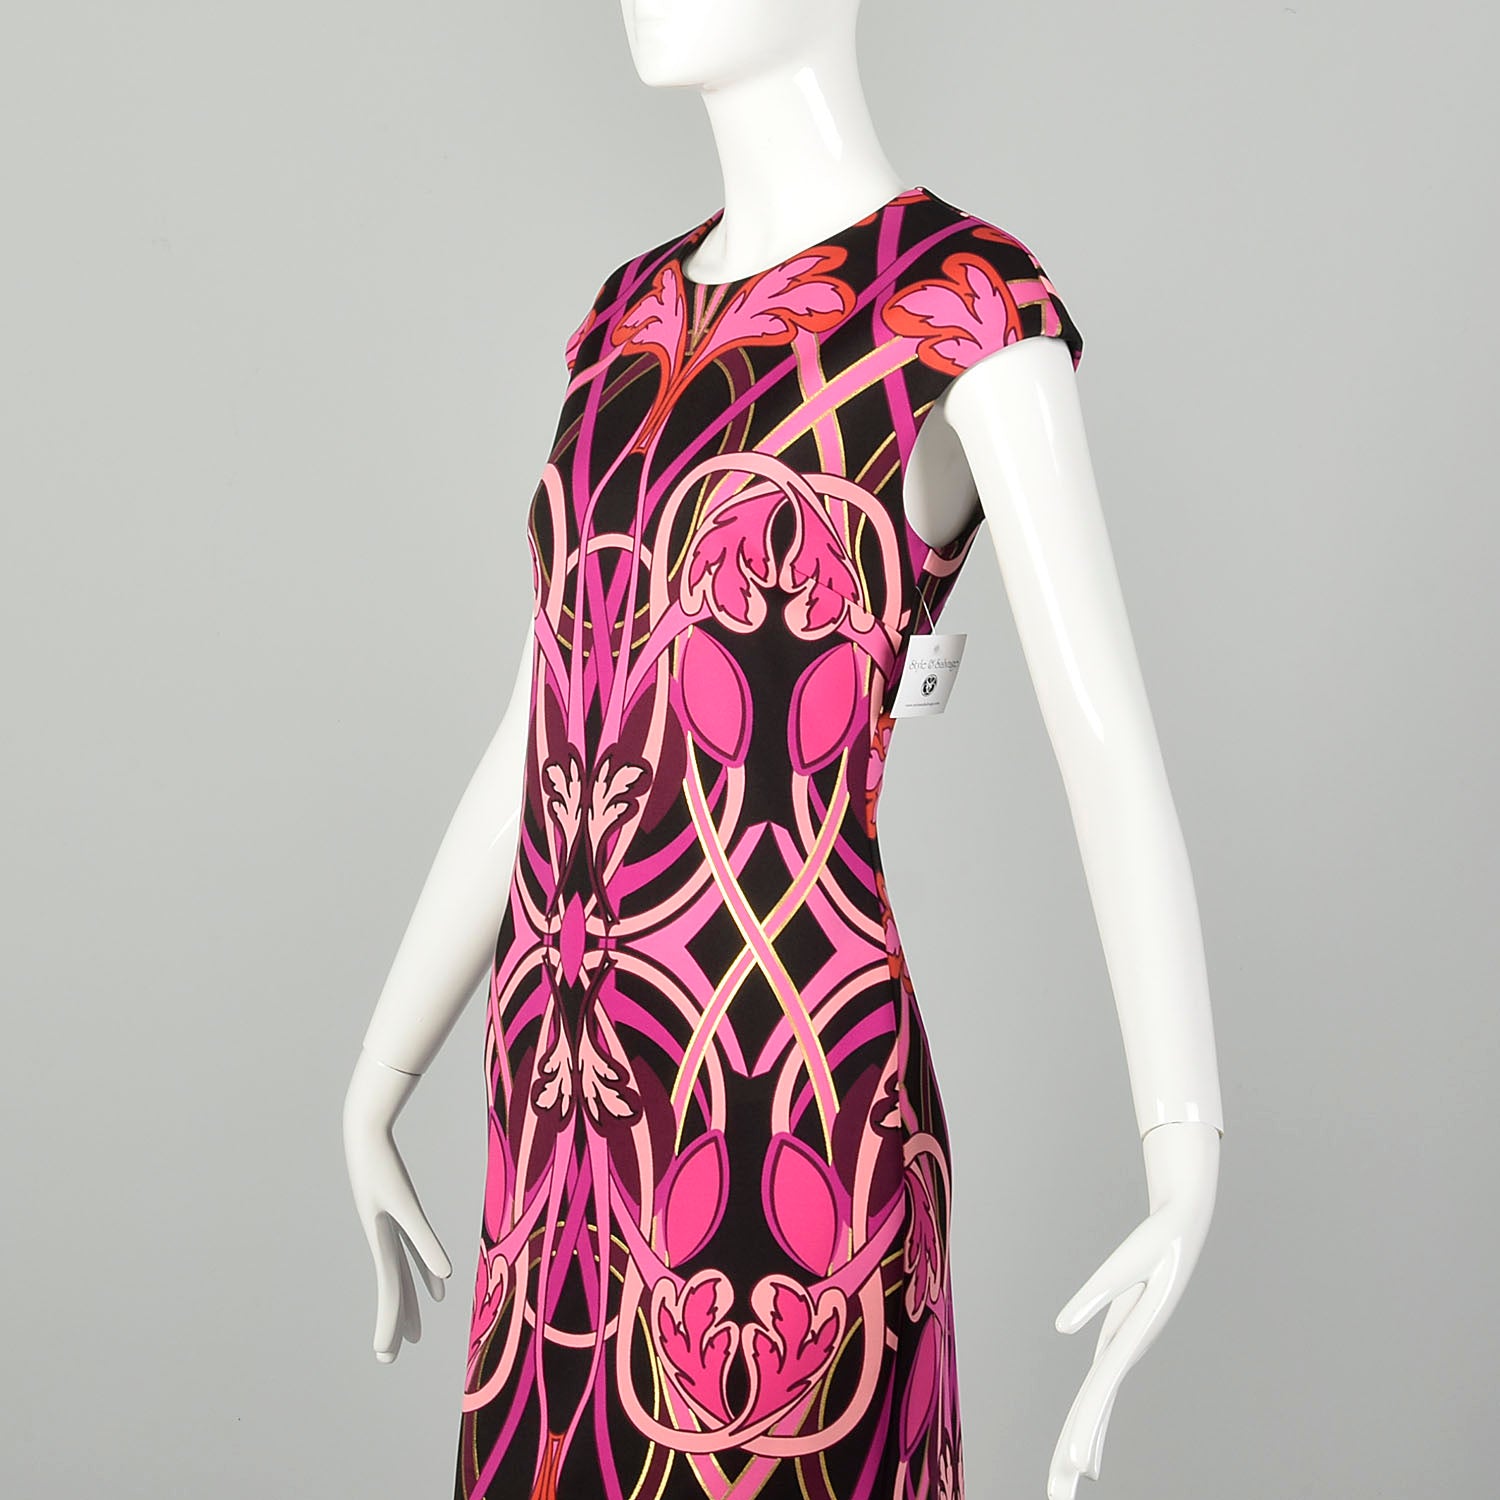 Small Ted Baker Pink Dress Black Short Sleeve Back Slit Designer